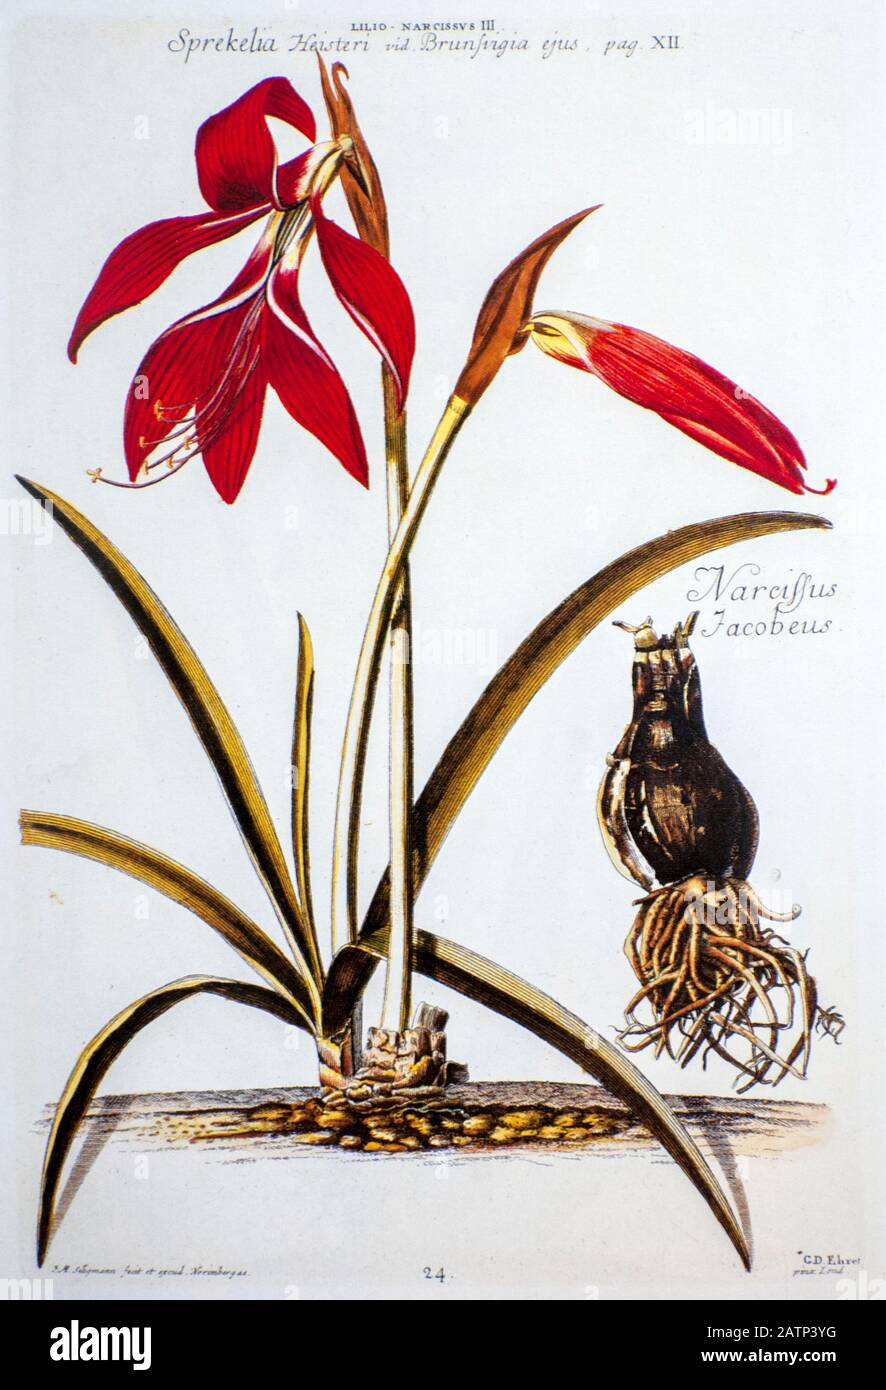 Farbige Kupferstichgravur einer Sprechelia formosissima (jakobische Lilie) aus hortus nitidissimus von Christoph Jakob Trew (Nürnberg 175-1792) Stockfoto